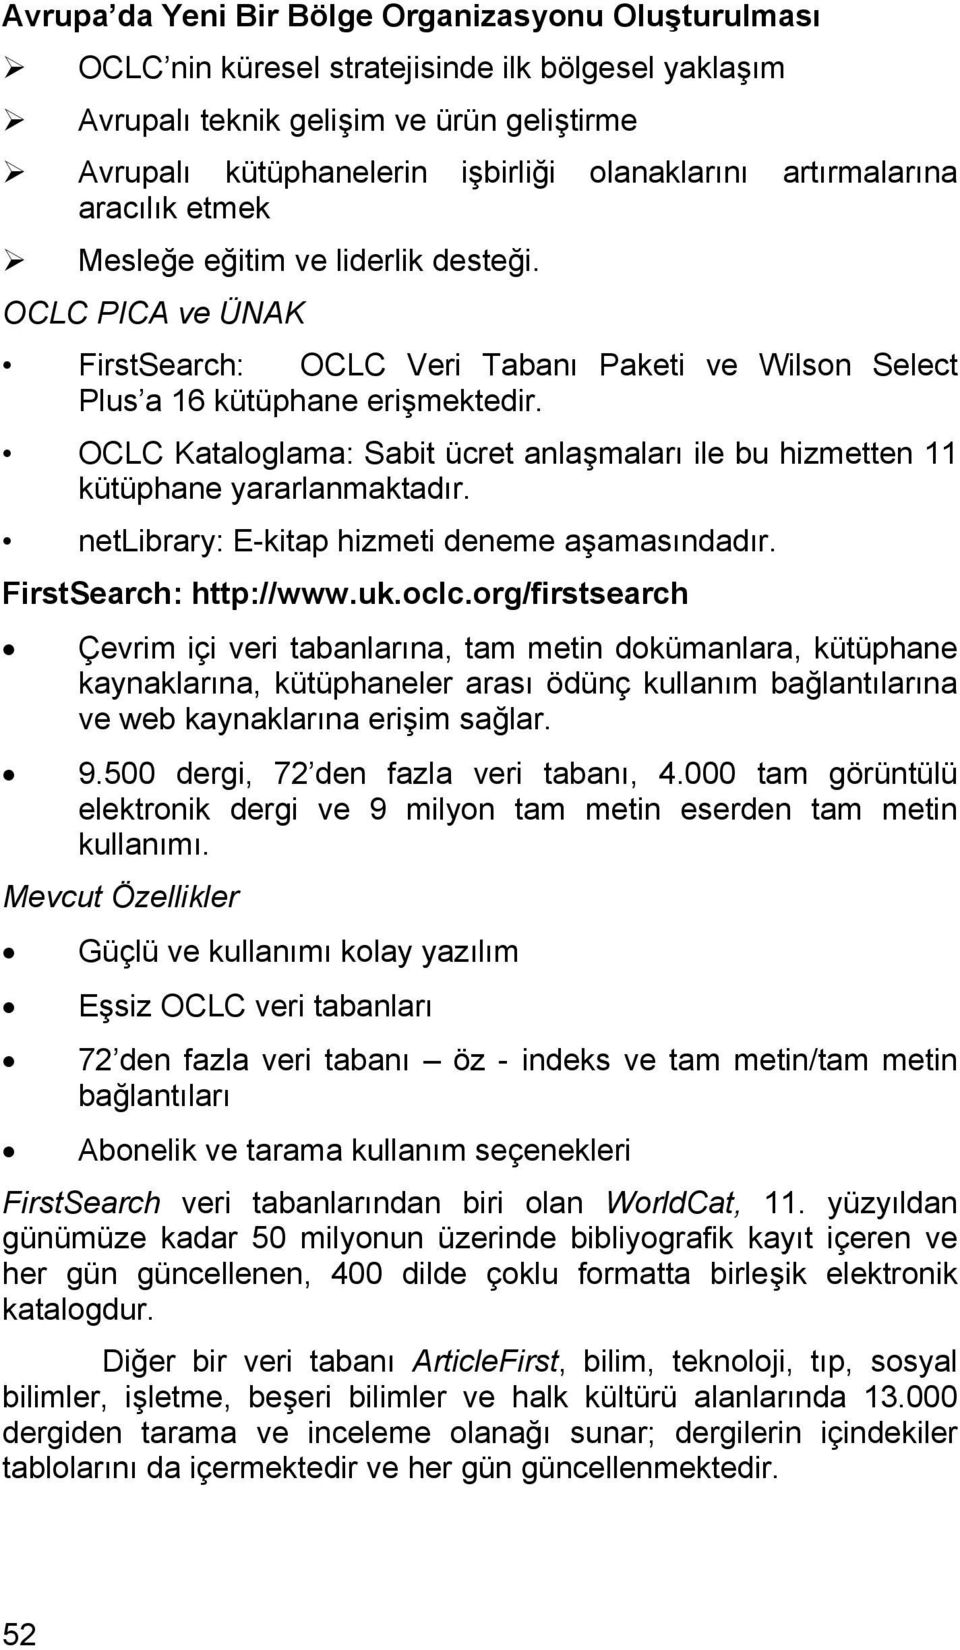 OCLC Kataloglama: Sabit ücret anlaşmaları ile bu hizmetten 11 kütüphane yararlanmaktadır. netlibrary: E-kitap hizmeti deneme aşamasındadır. FirstSearch: http://www.uk.oclc.